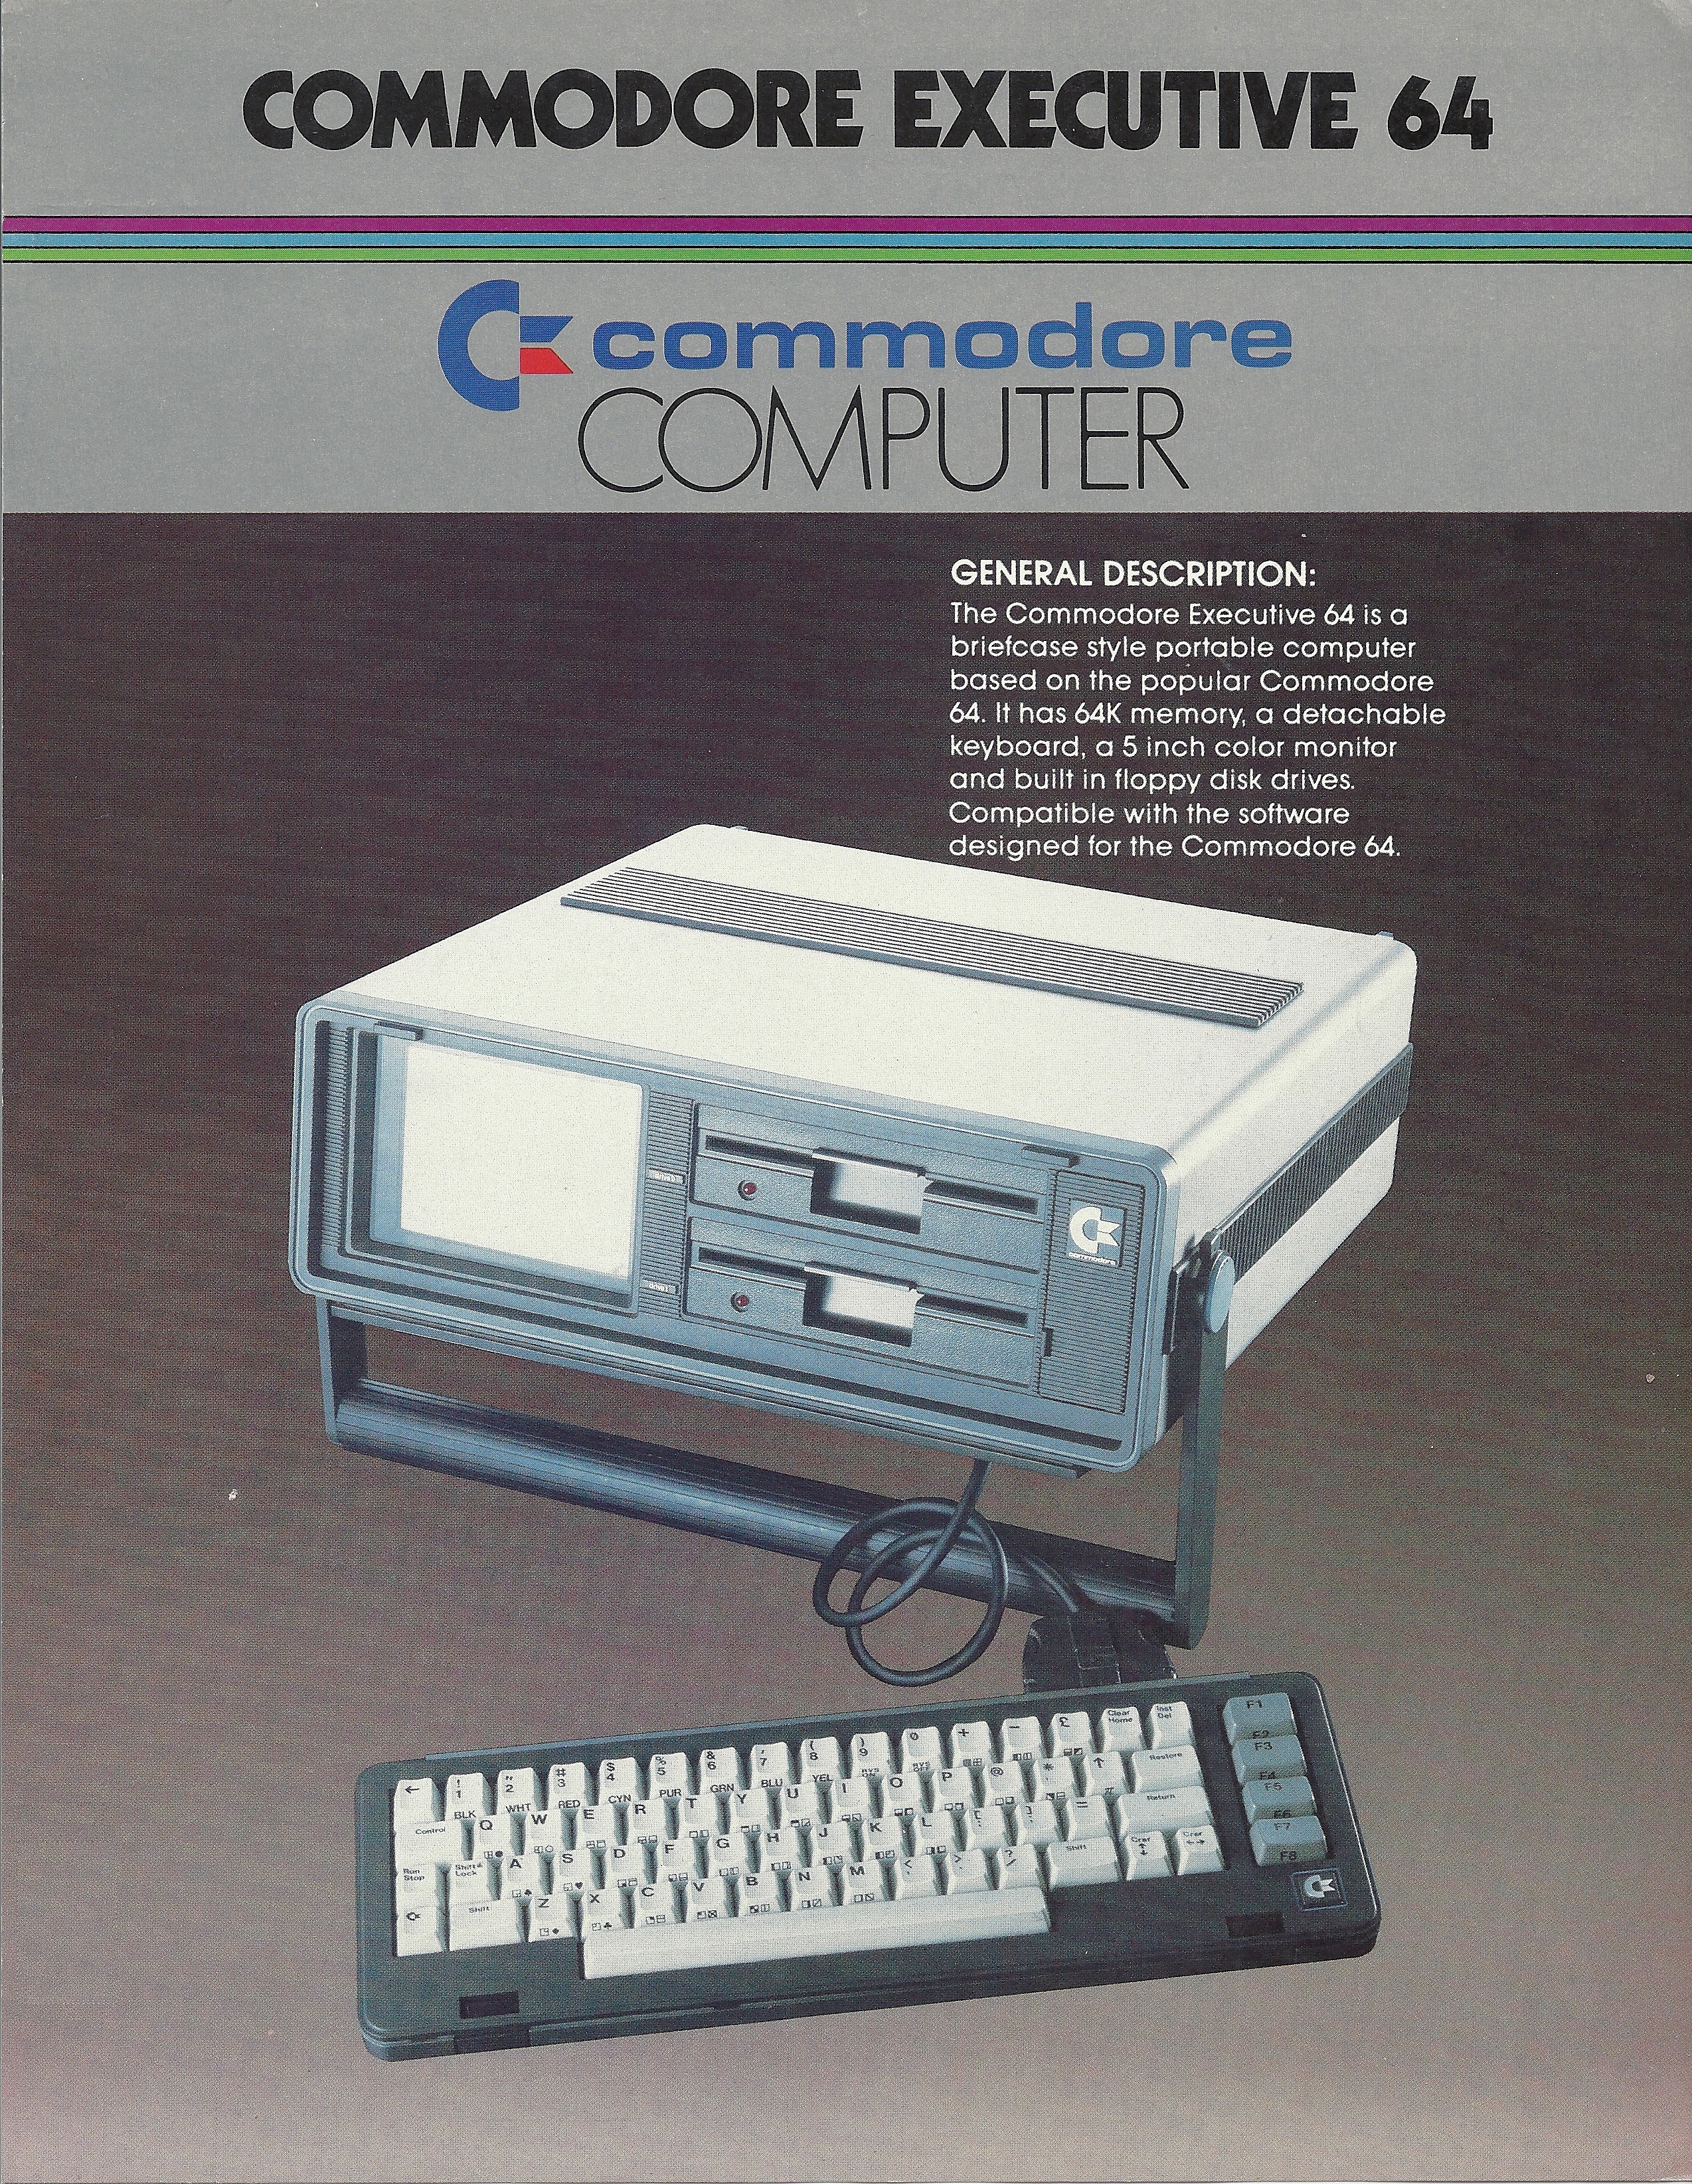 Commodore SX-64: Commodore Executive 64